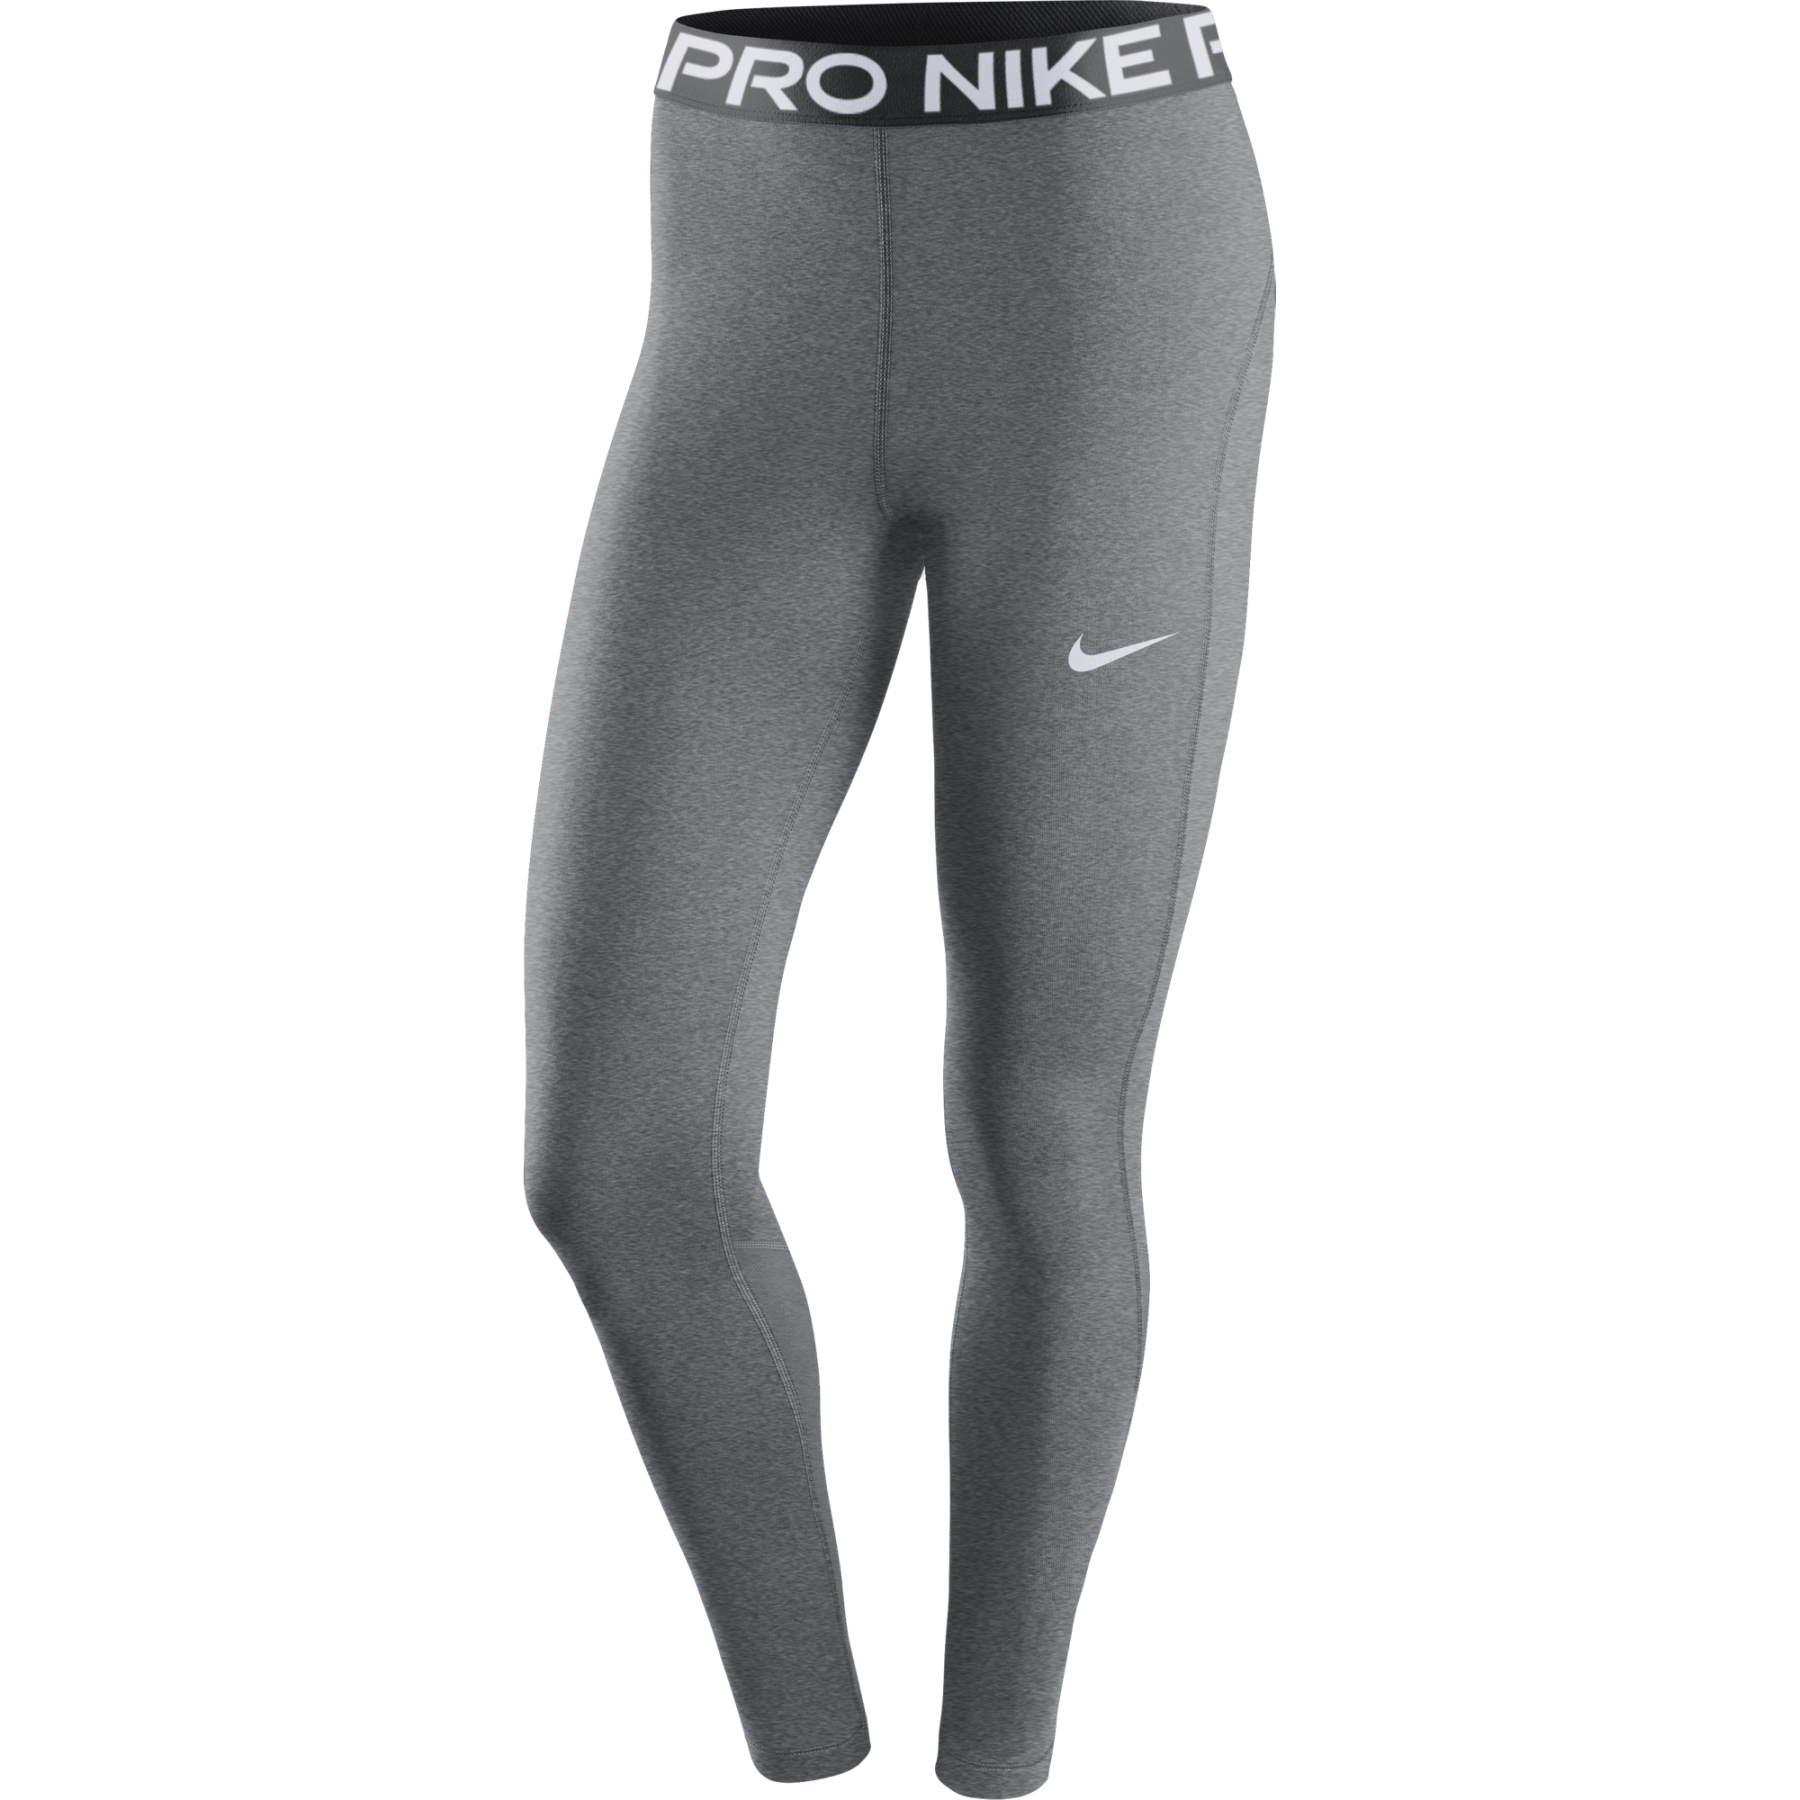 Immagine di Nike Mid-Rise Legging Donna - Pro - smoke grey/heather/black/white CZ9779-084